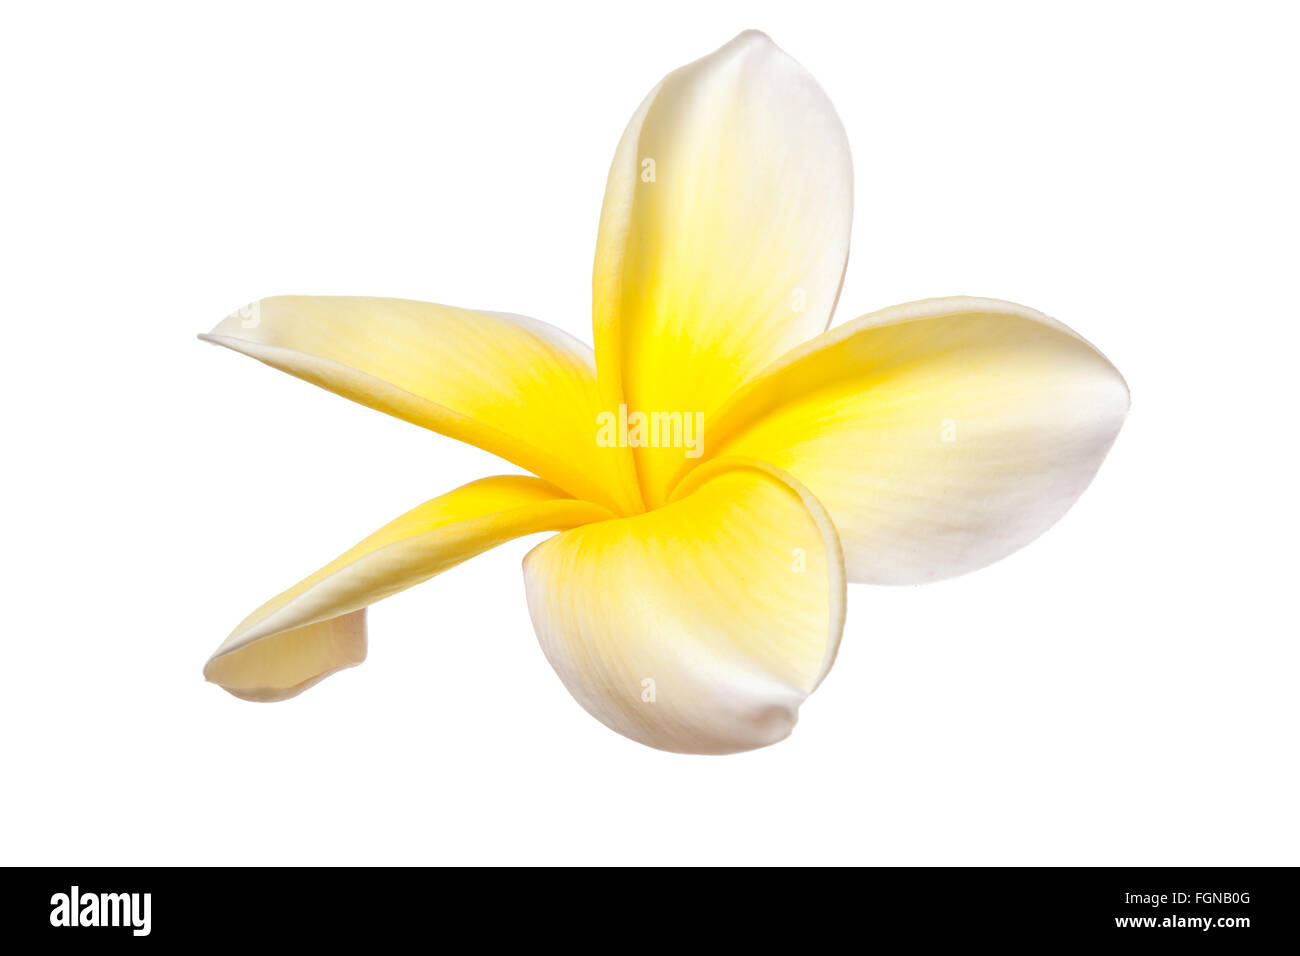 Flor Frangipani Plumeria Flores Tropicales en blanco y amarillo sobre fondo blanco. Foto de stock